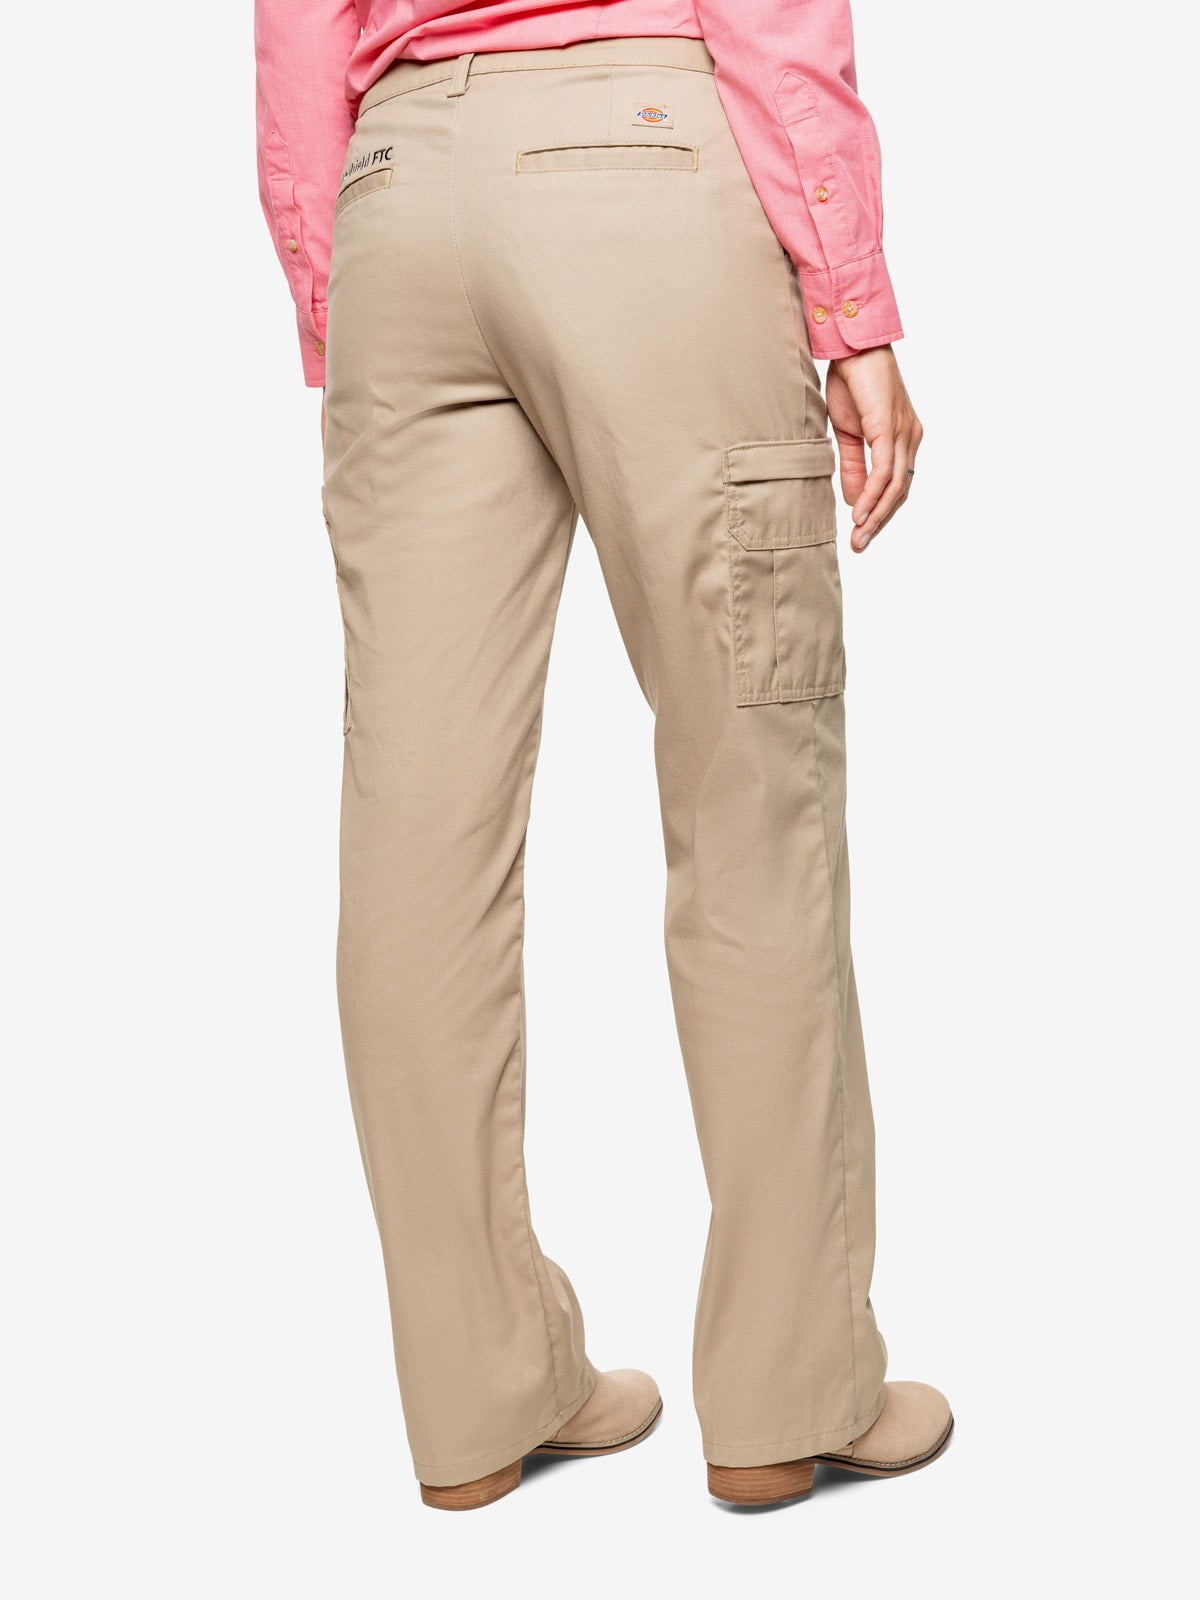 GAP Womens Petite 6 Flat Front Casual Khaki Pants Tan | eBay